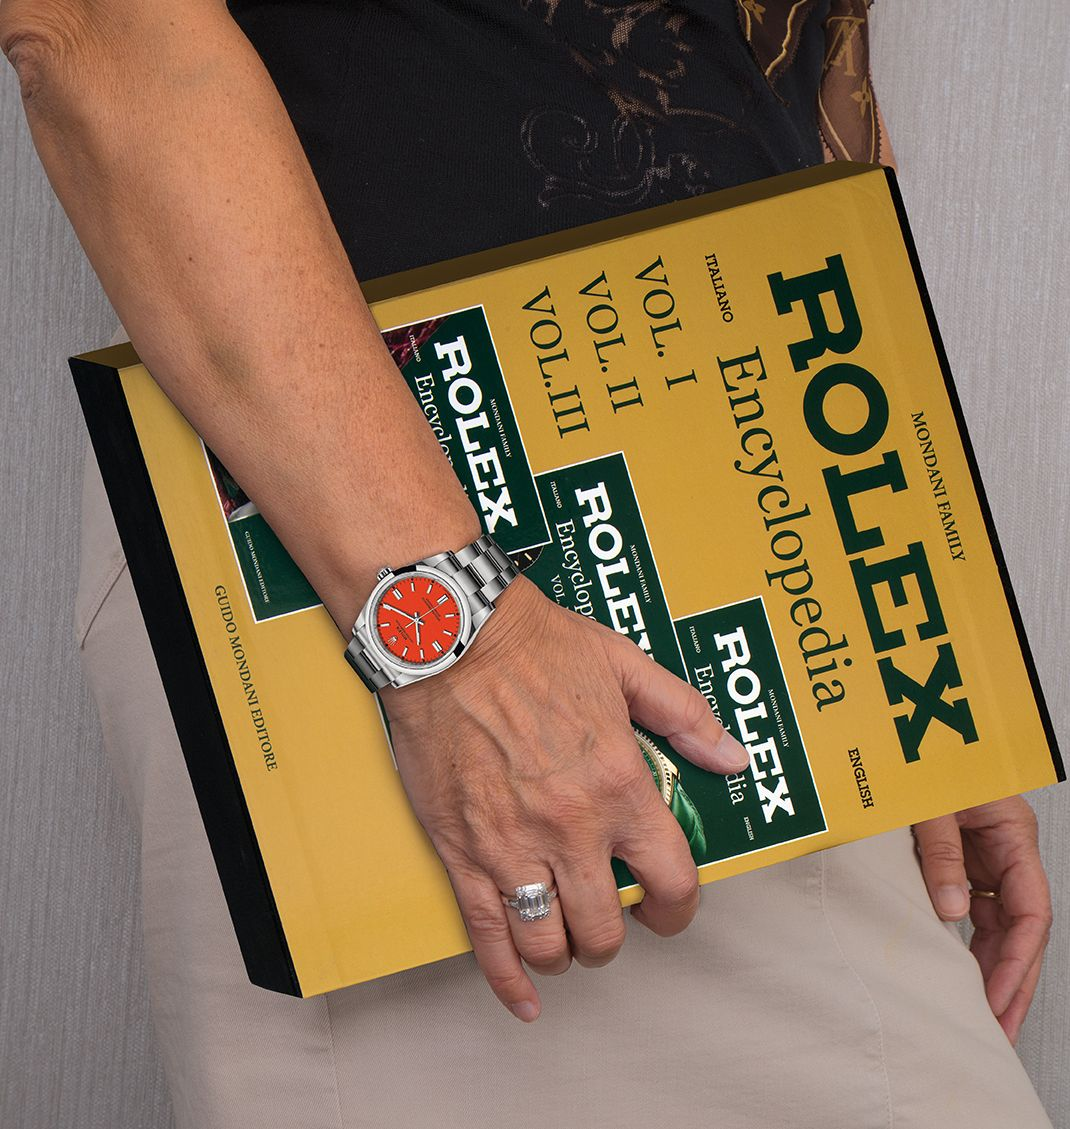 Rolex Encyclopedia (3 Bänder)